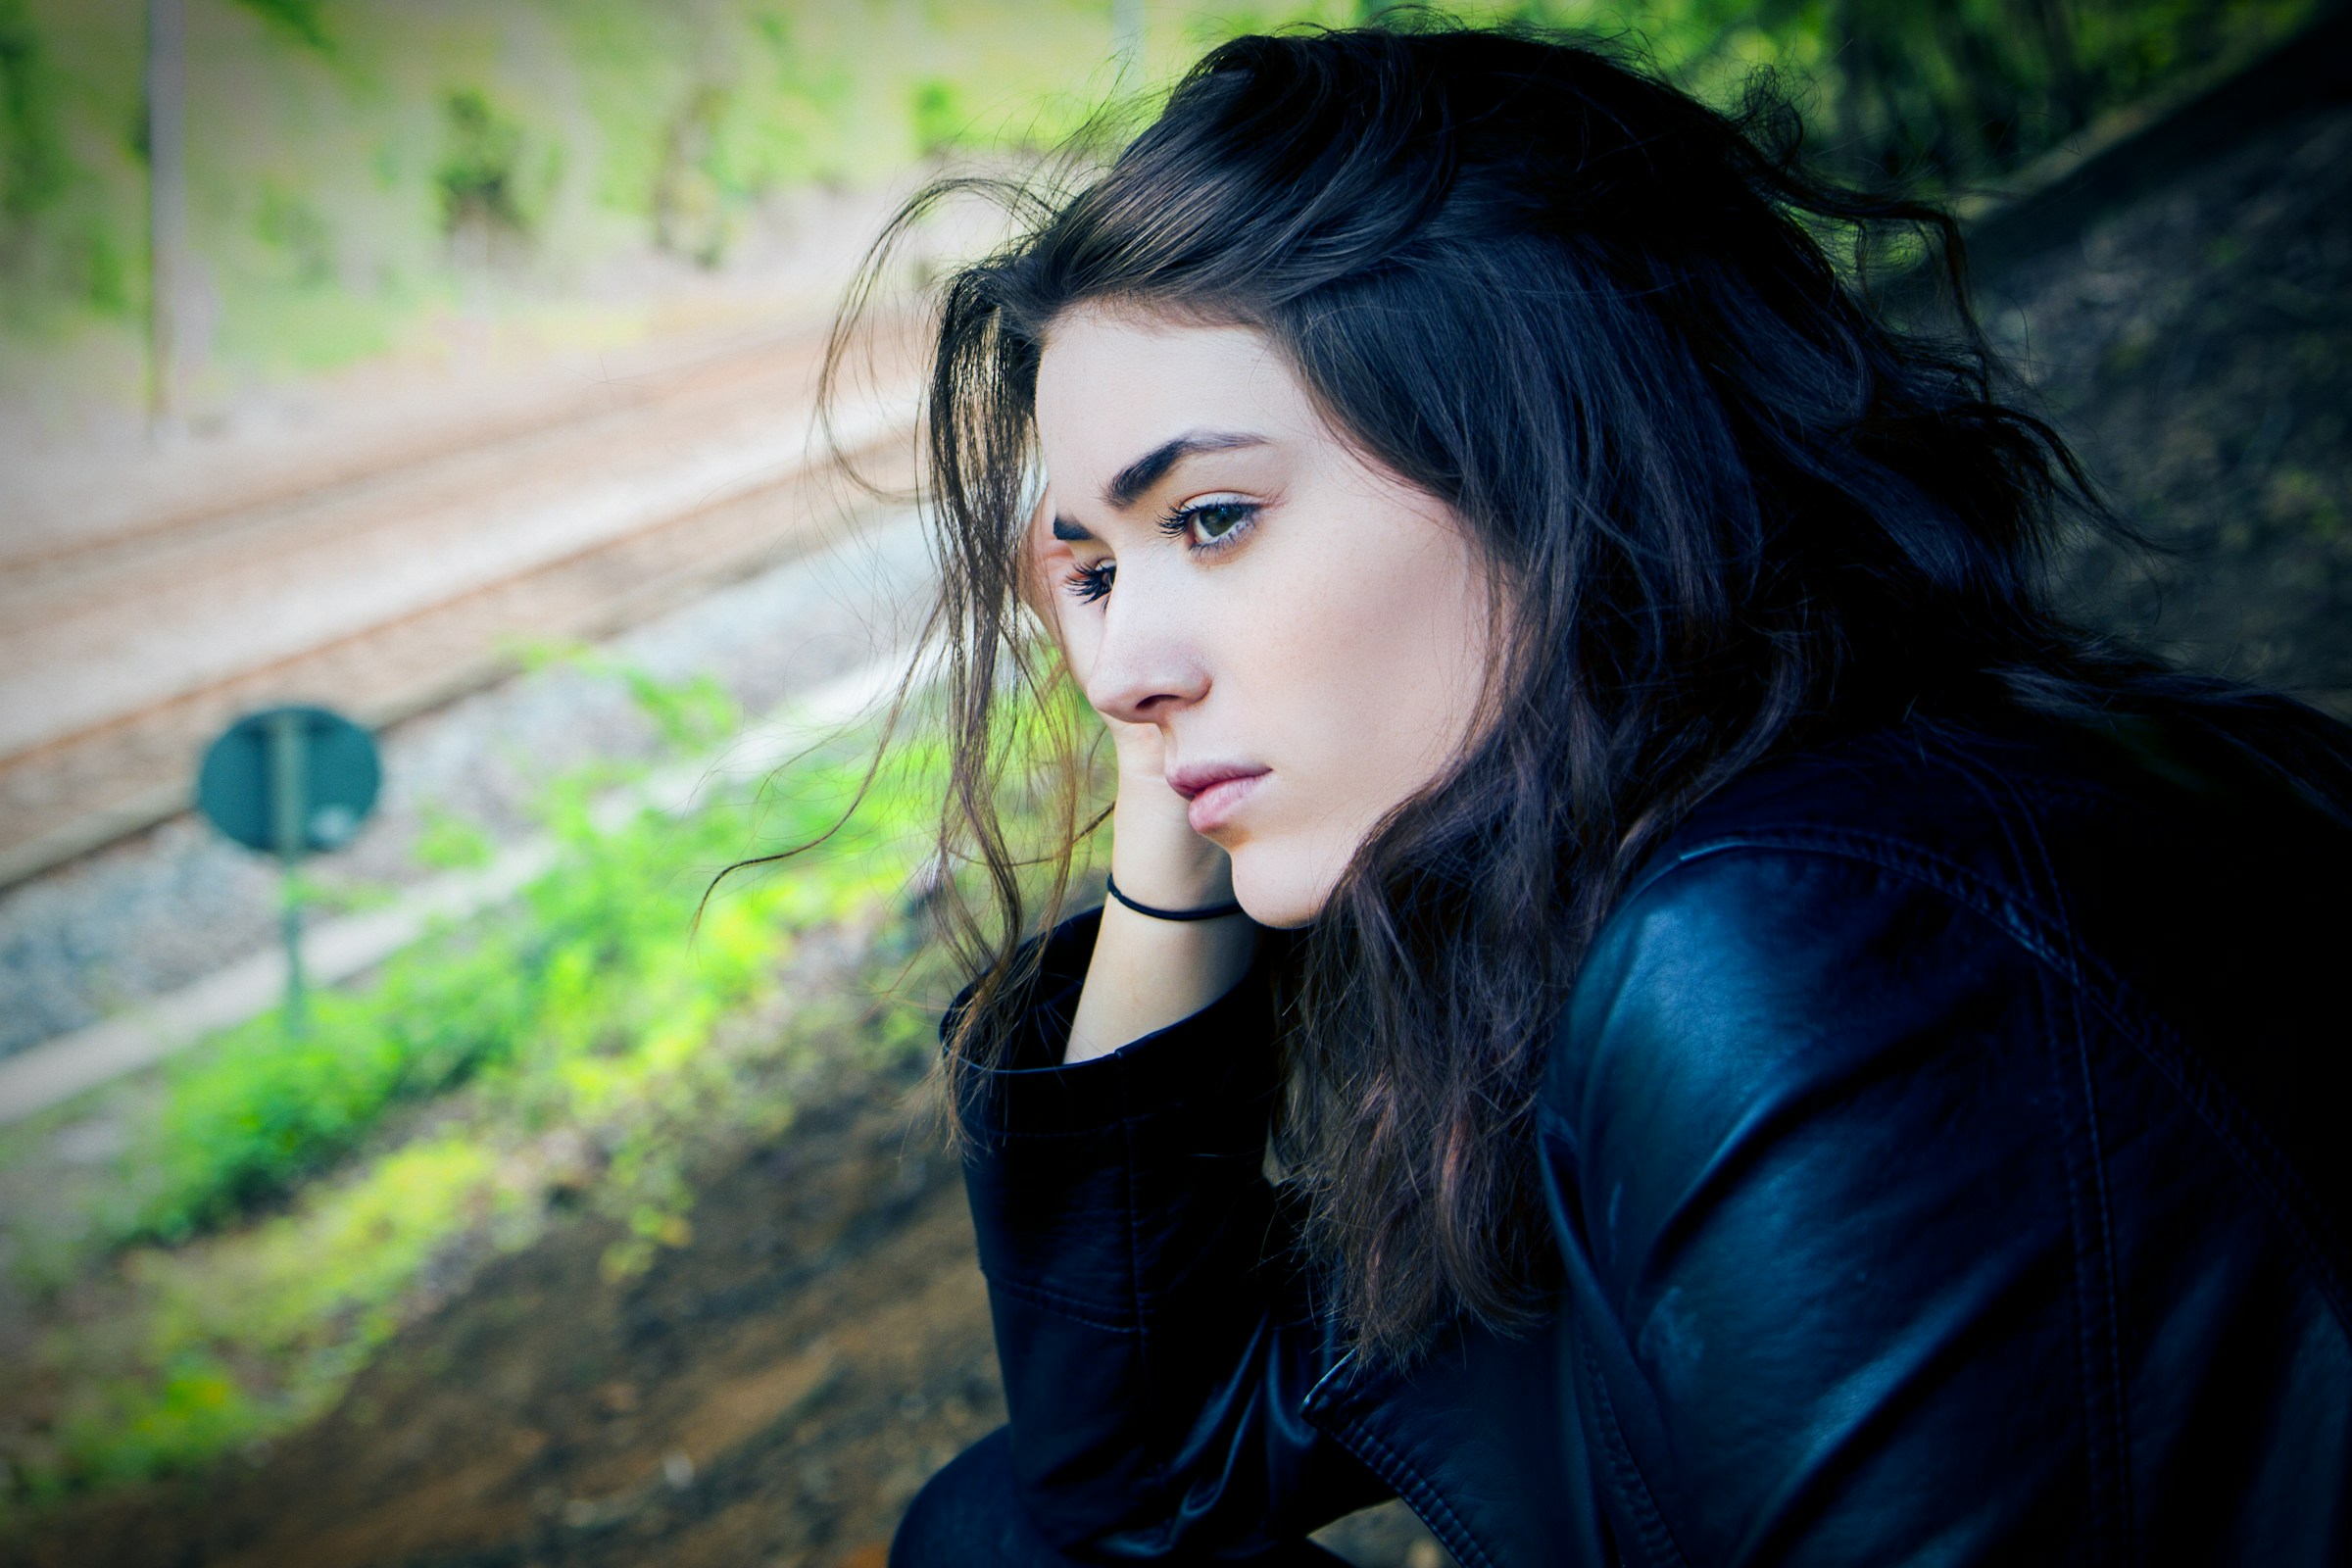 Eine nachdenkliche junge Frau, die tagsüber im Freien sitzt | Quelle: Unsplash